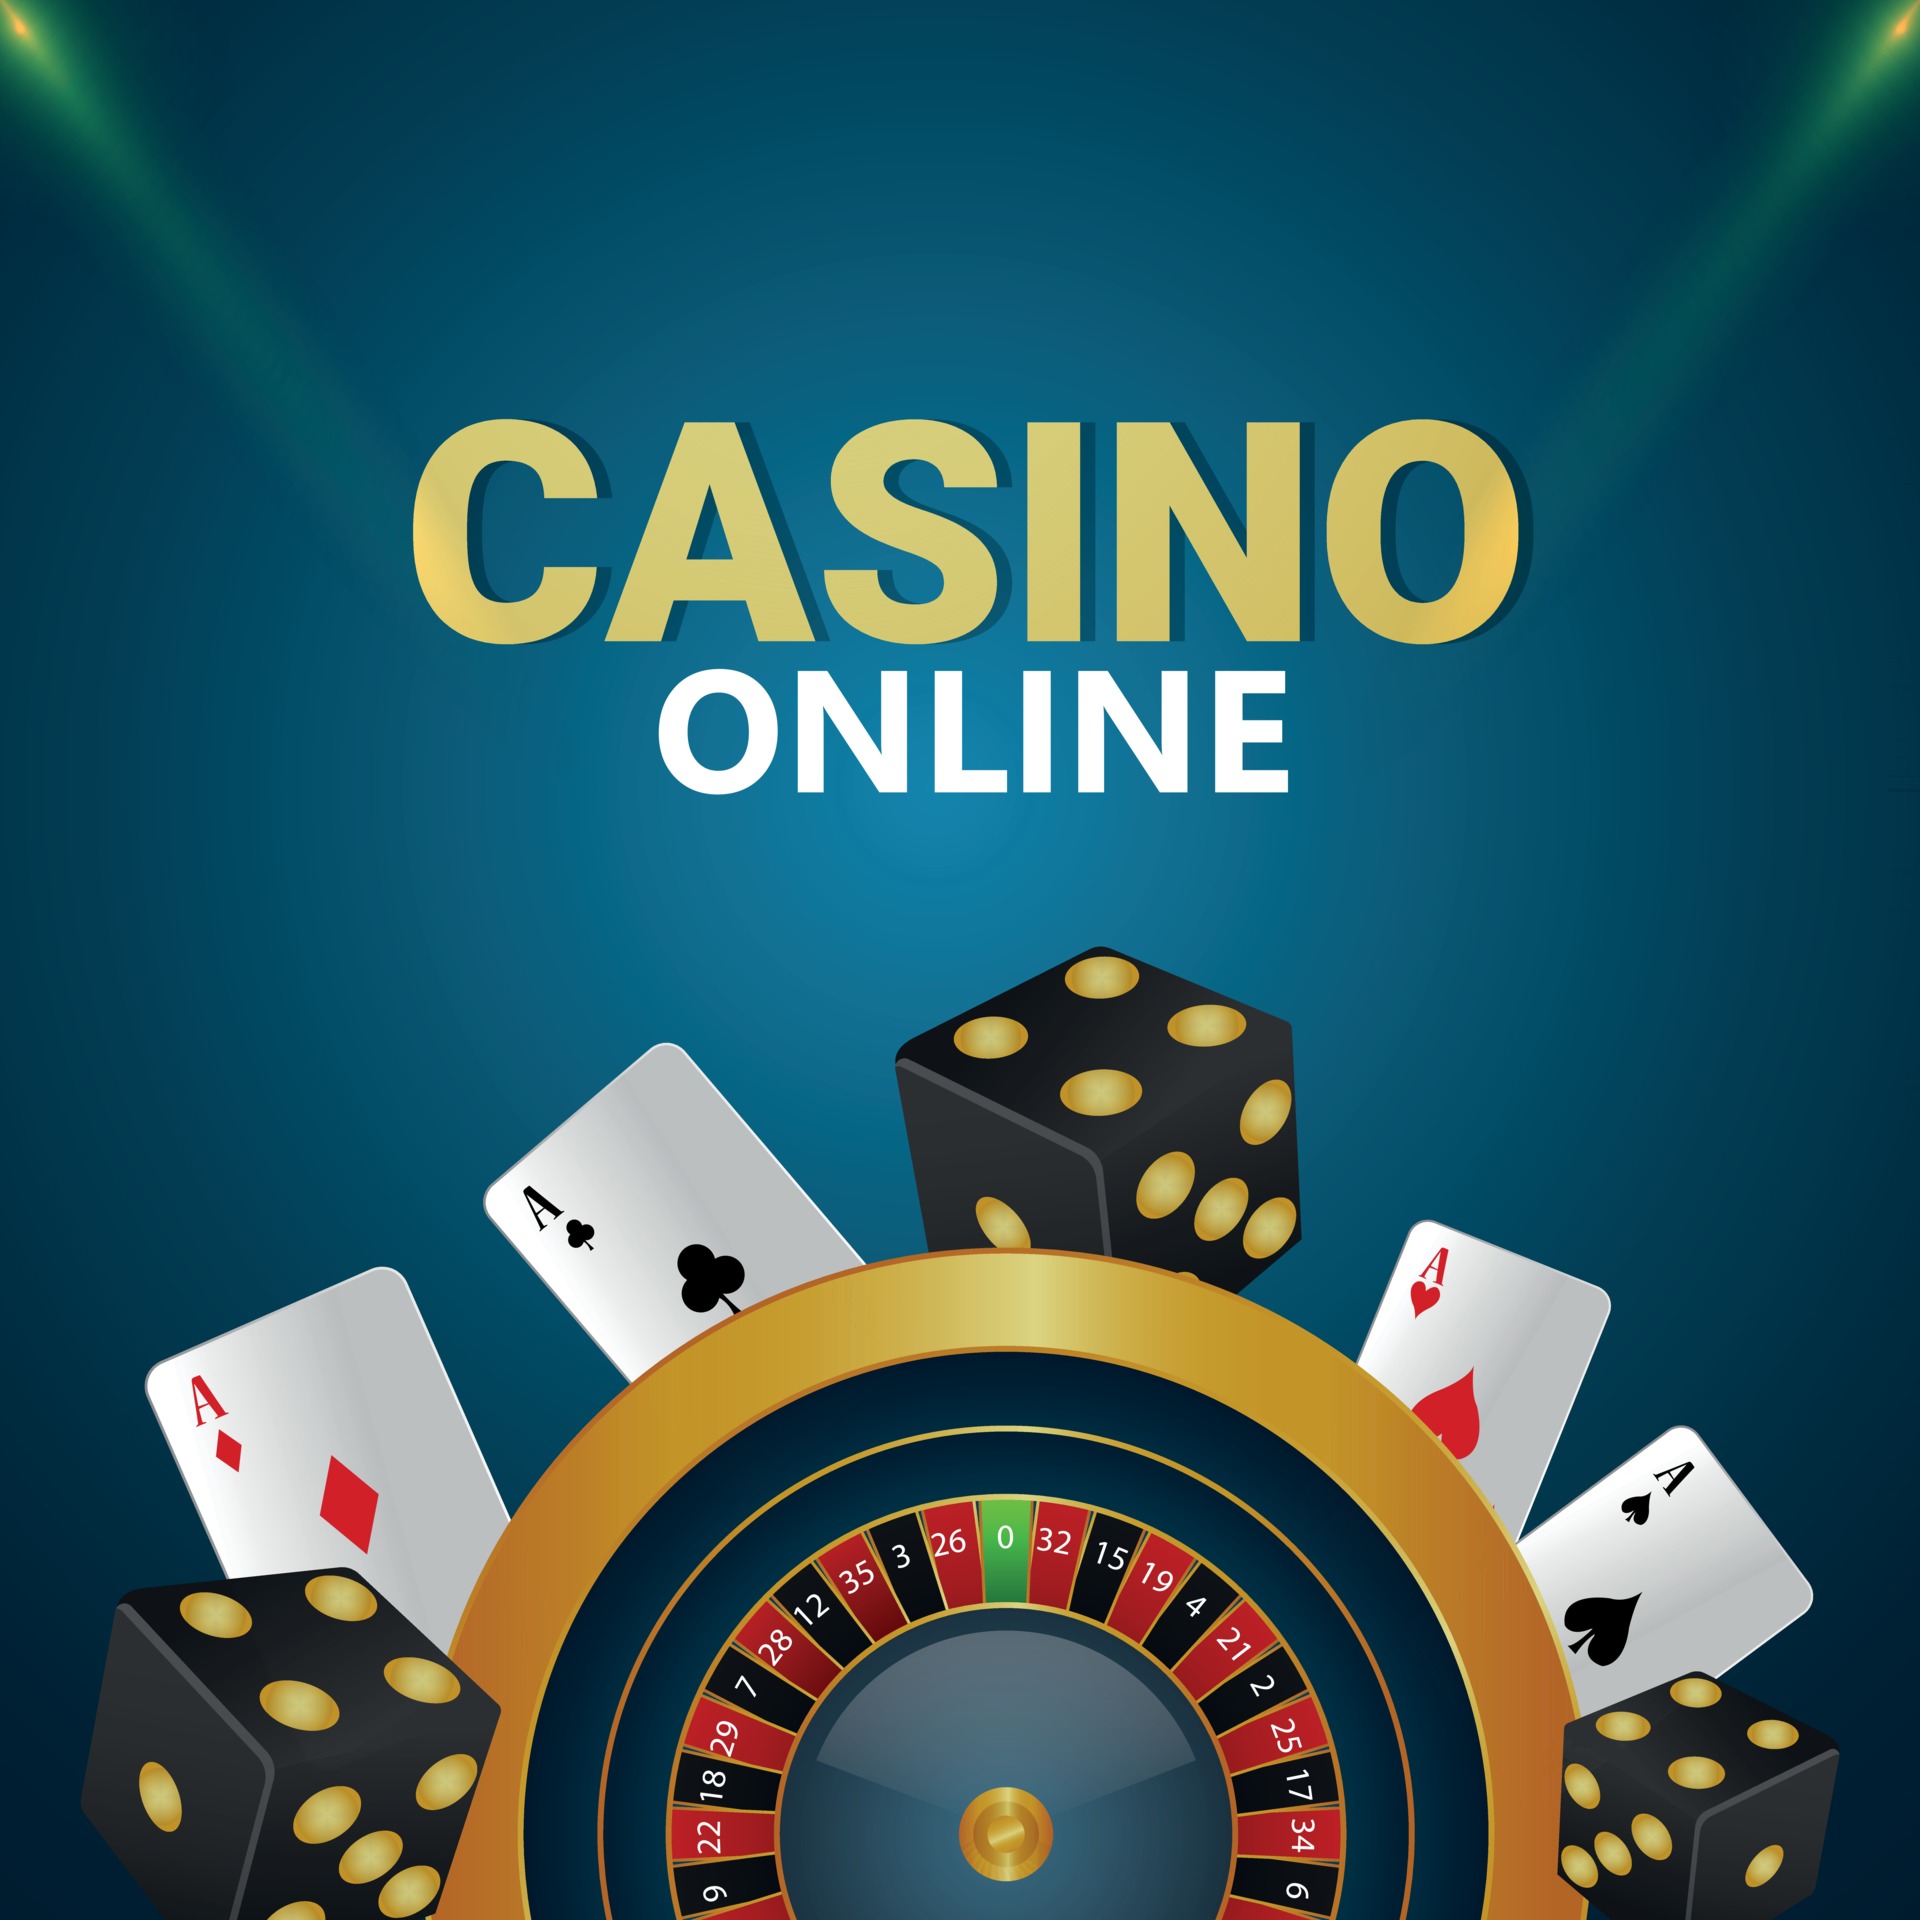 Jogar Jogos Online De Roleta De Jogos De Casino No Tablet Digital  Ilustração Stock - Ilustração de povos, cassino: 242879299